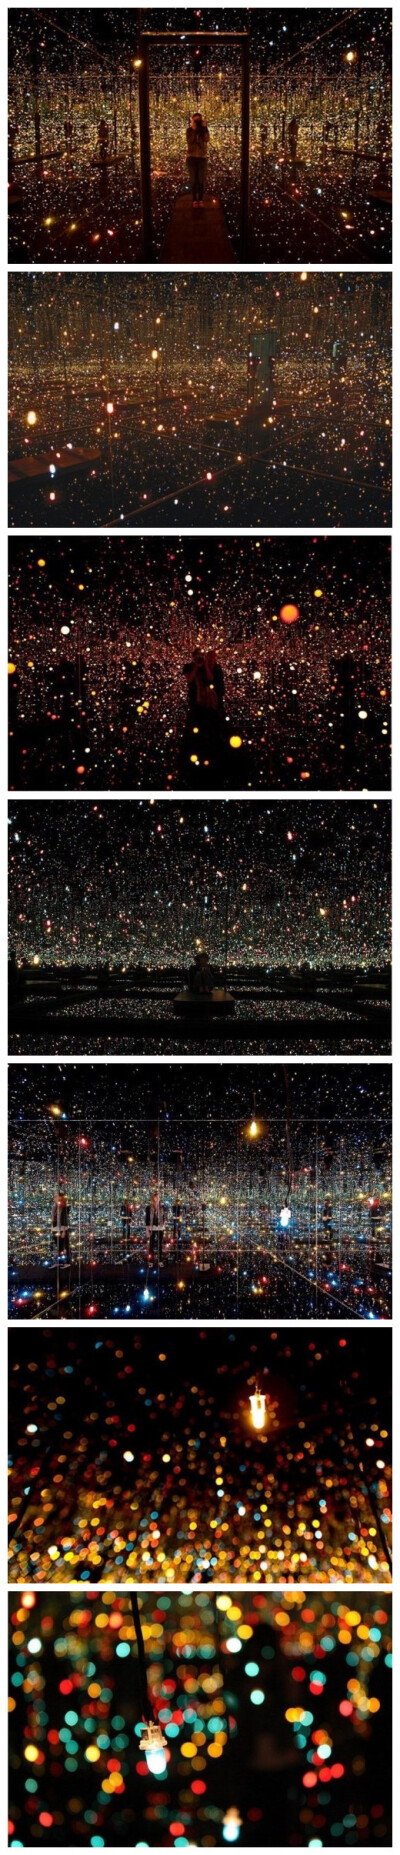 【草间弥生·水上萤火虫】日本艺术家草间弥生的装置艺术作品“水上萤火虫”，让人仿佛置身萤火虫幻境，迷失在星星点点的梦境中，时间、空间瞬间失去存在感。今年7月到9月将在纽约Whitney博物馆展出。